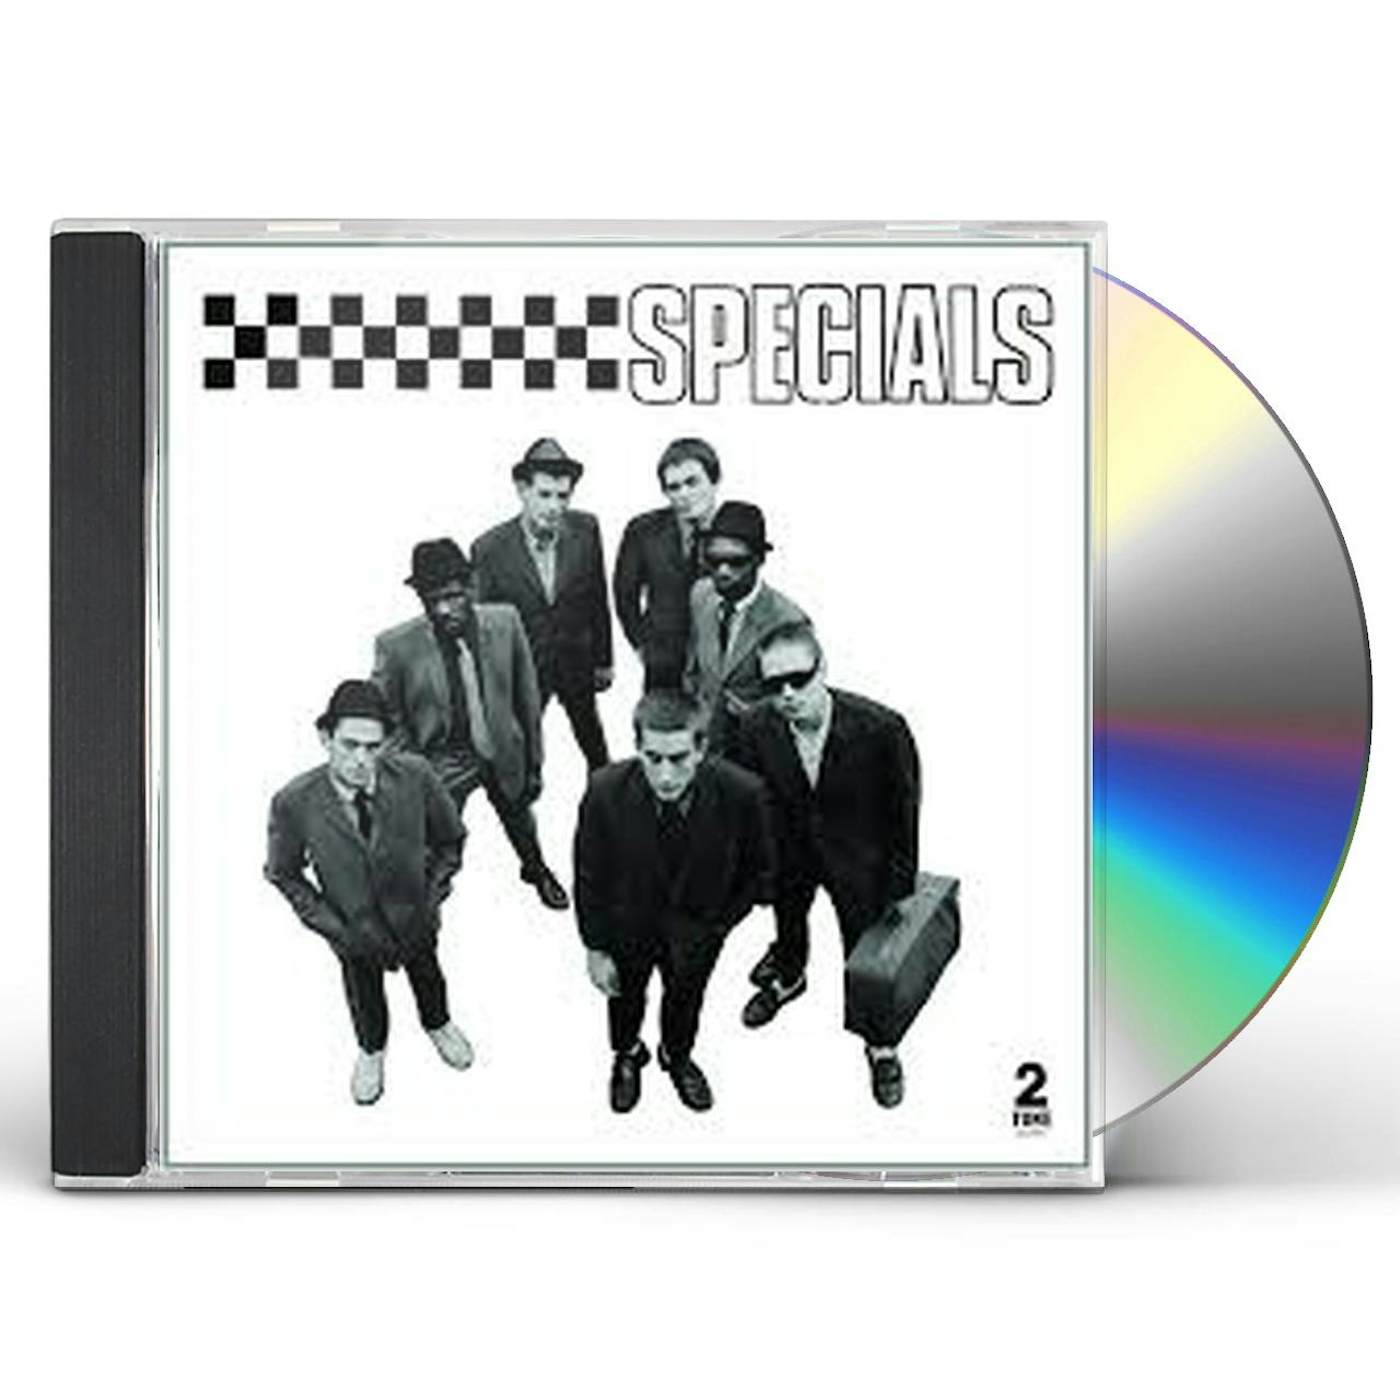 The Specials CD